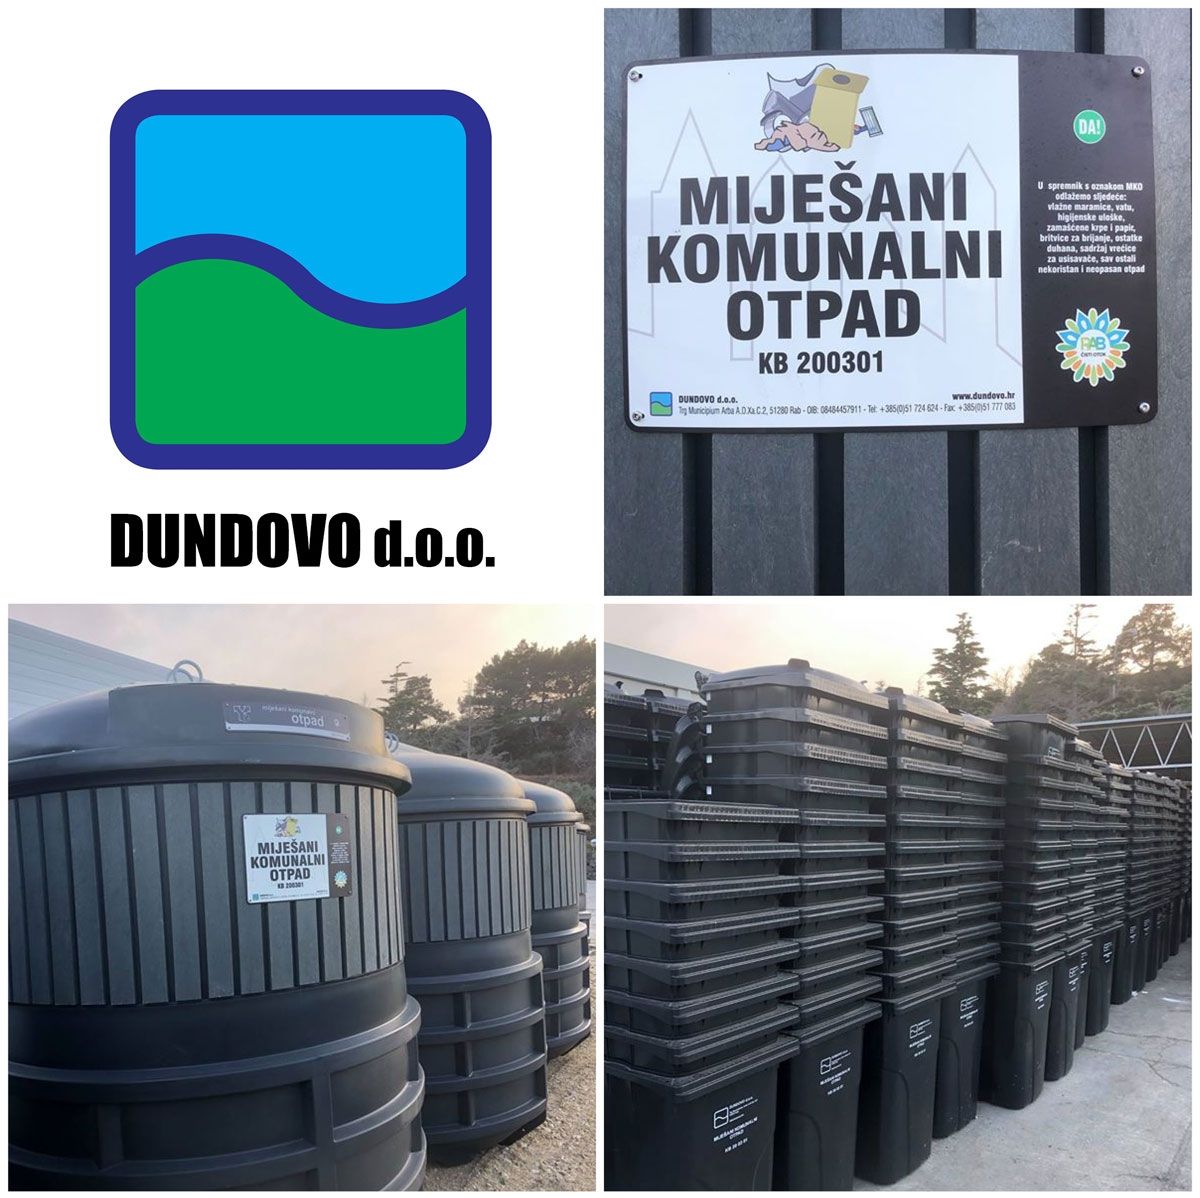 DUNDOVO d.o.o. – U tijeku je podjela čipiranih individualnih spremnika za prikupljanje miješanog komunalnog otpada